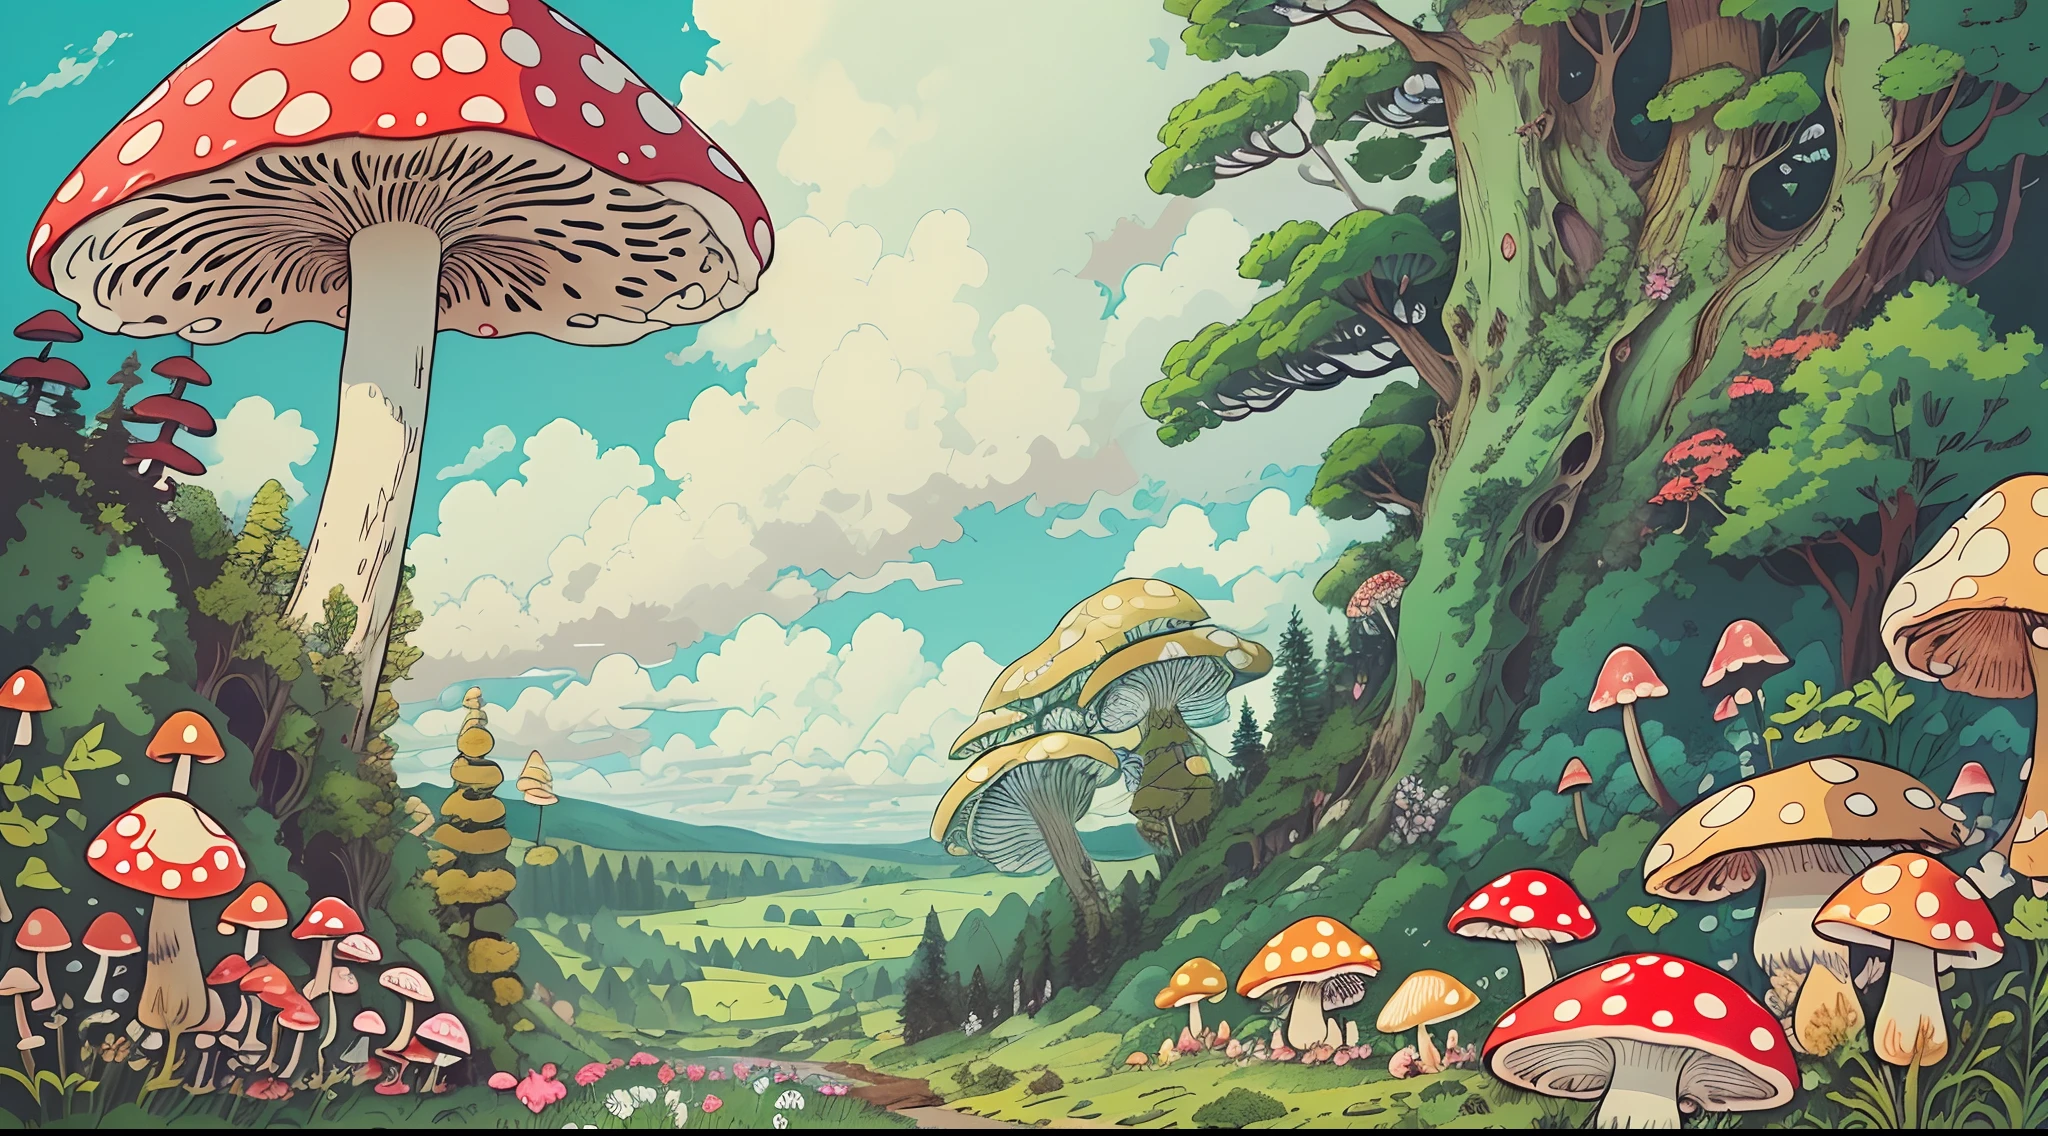 con un realista、Se Auténtico、bellamente、hongos、a large amount of hongos、el bosque、en el bosque、Carretera en el bosque、Color々Coloring hongos、seta grande、hongo gigante、Increíble paisaje pintura al óleo Studio Ghibli Hayao Miyazaki pradera de pétalos con cielo azul y nubes blancas --v6